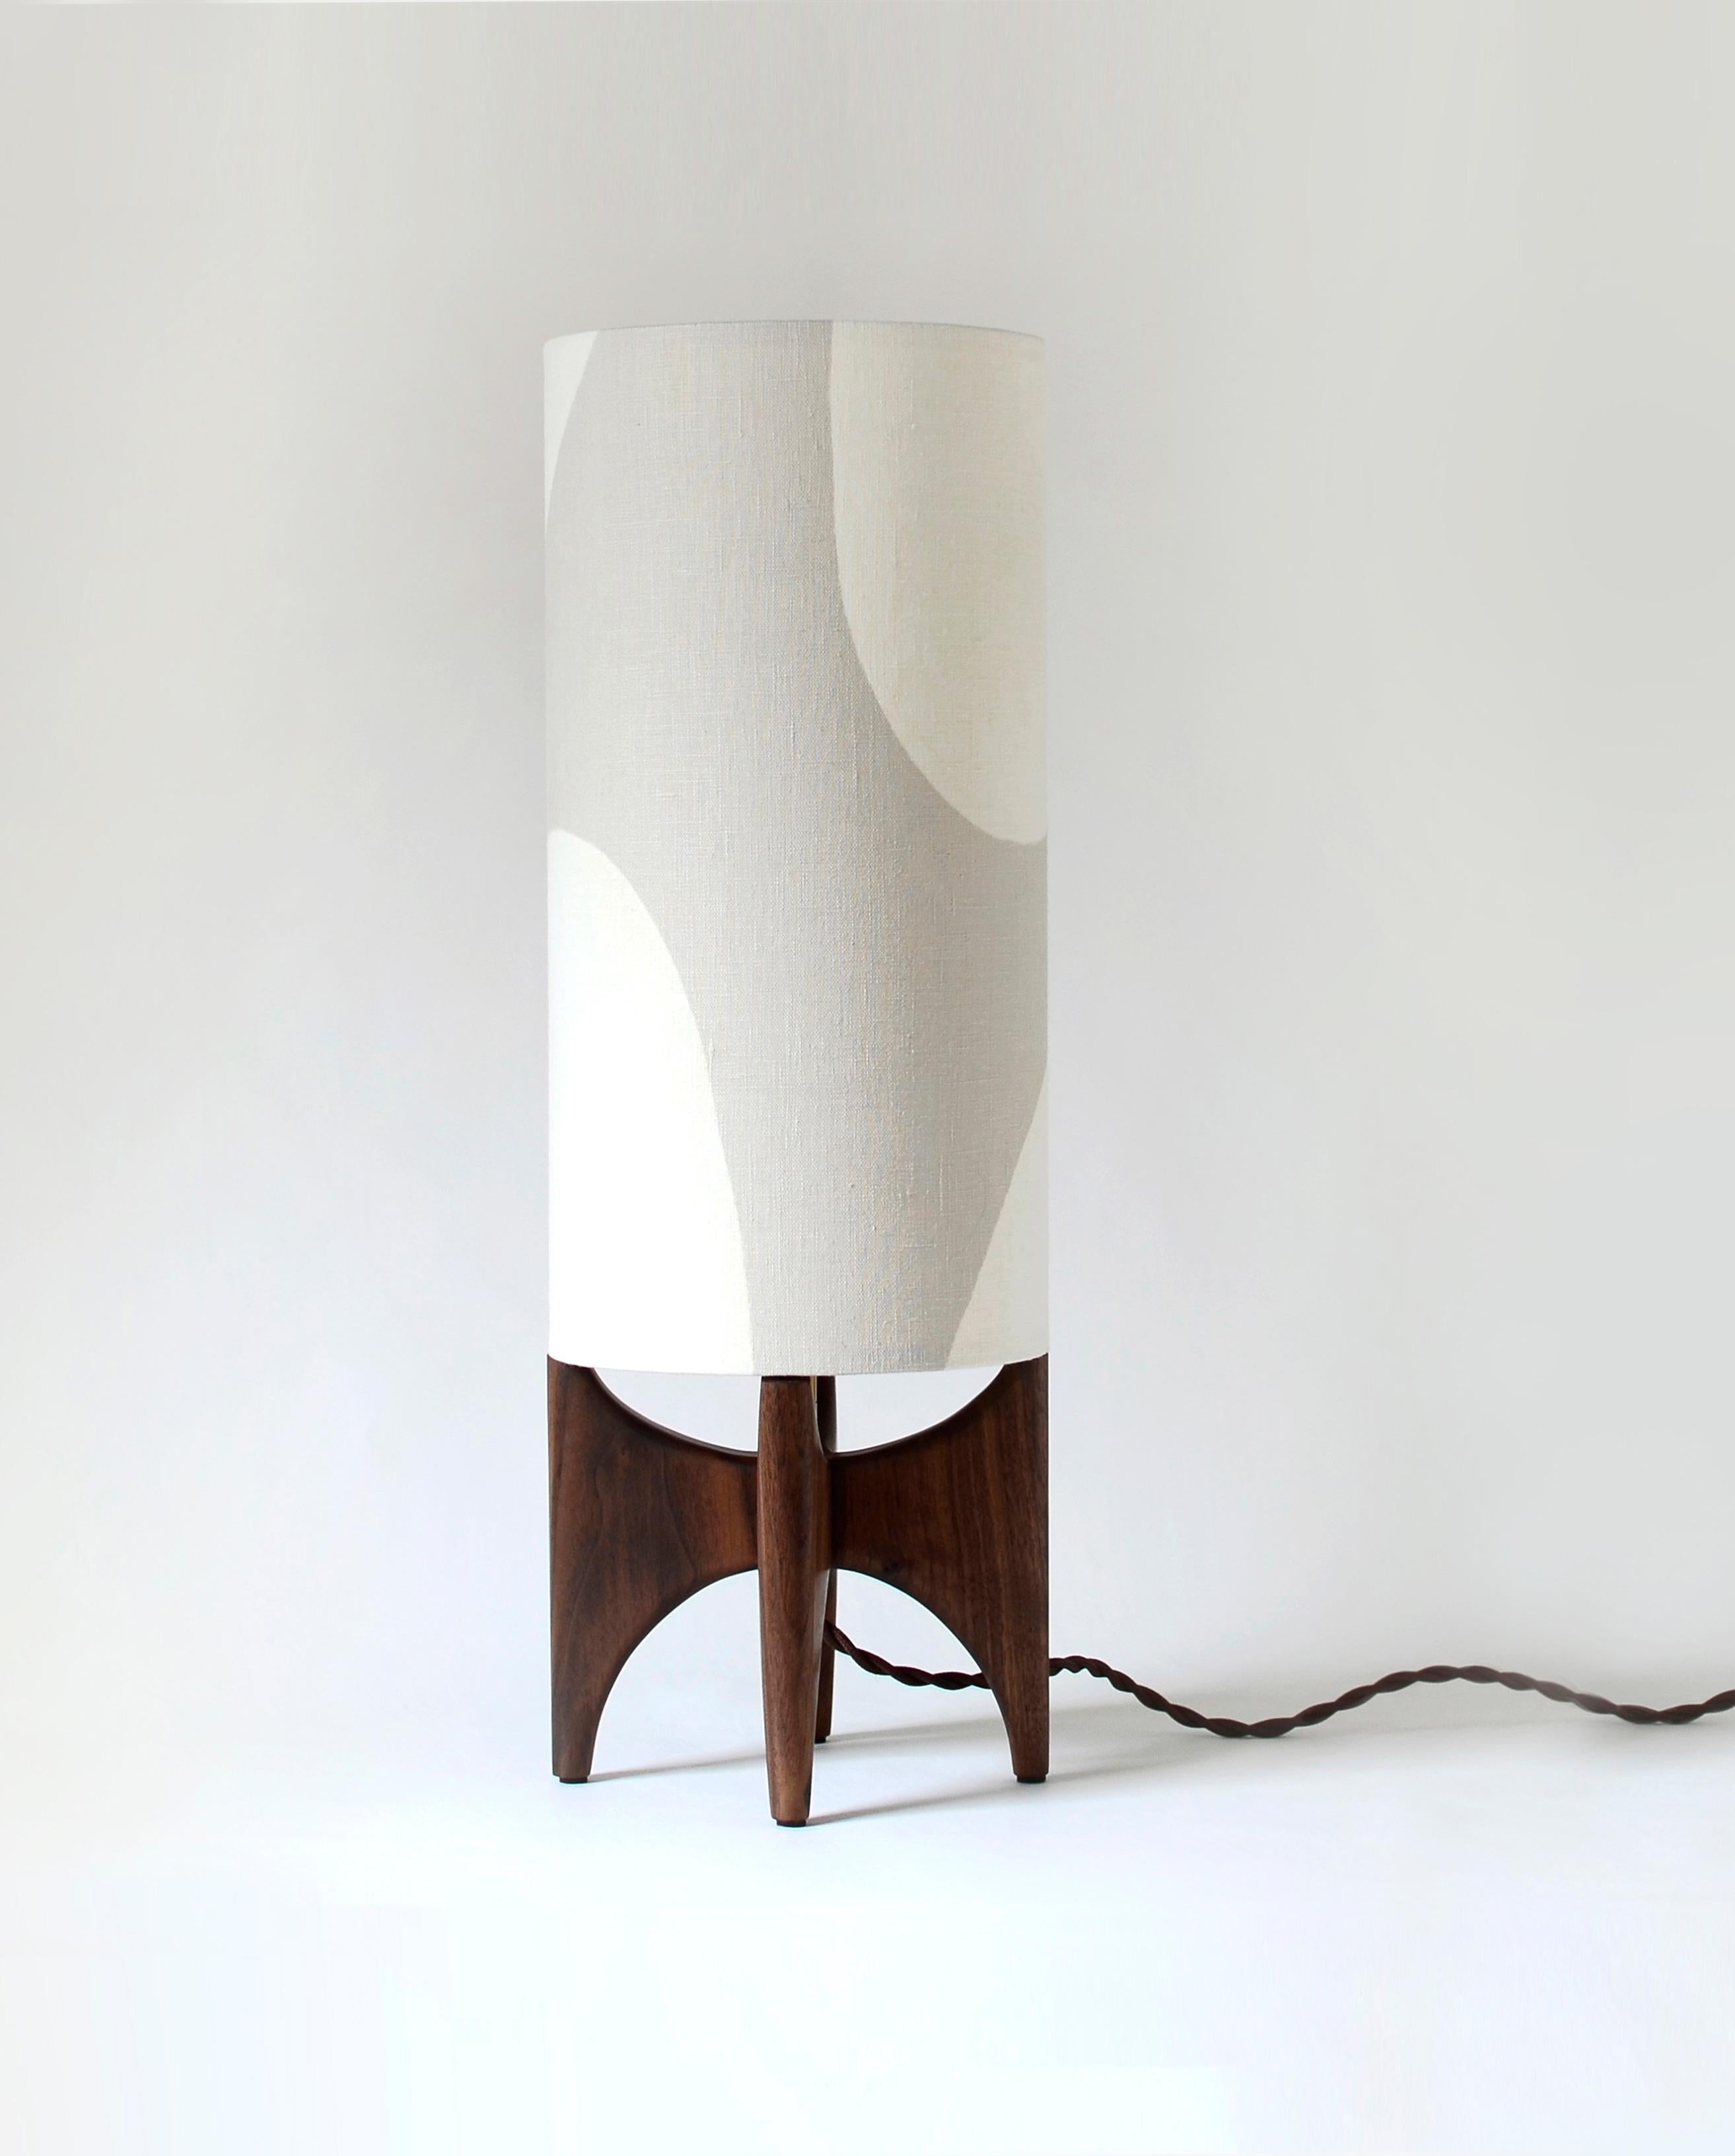 De style moderne, cette lampe de table combine des formes épurées et curvilignes pour créer une pièce unique. Notre collection Luma joue avec des formes simples, explorant l'espace positif et négatif pour créer un abat-jour unique et moderne,